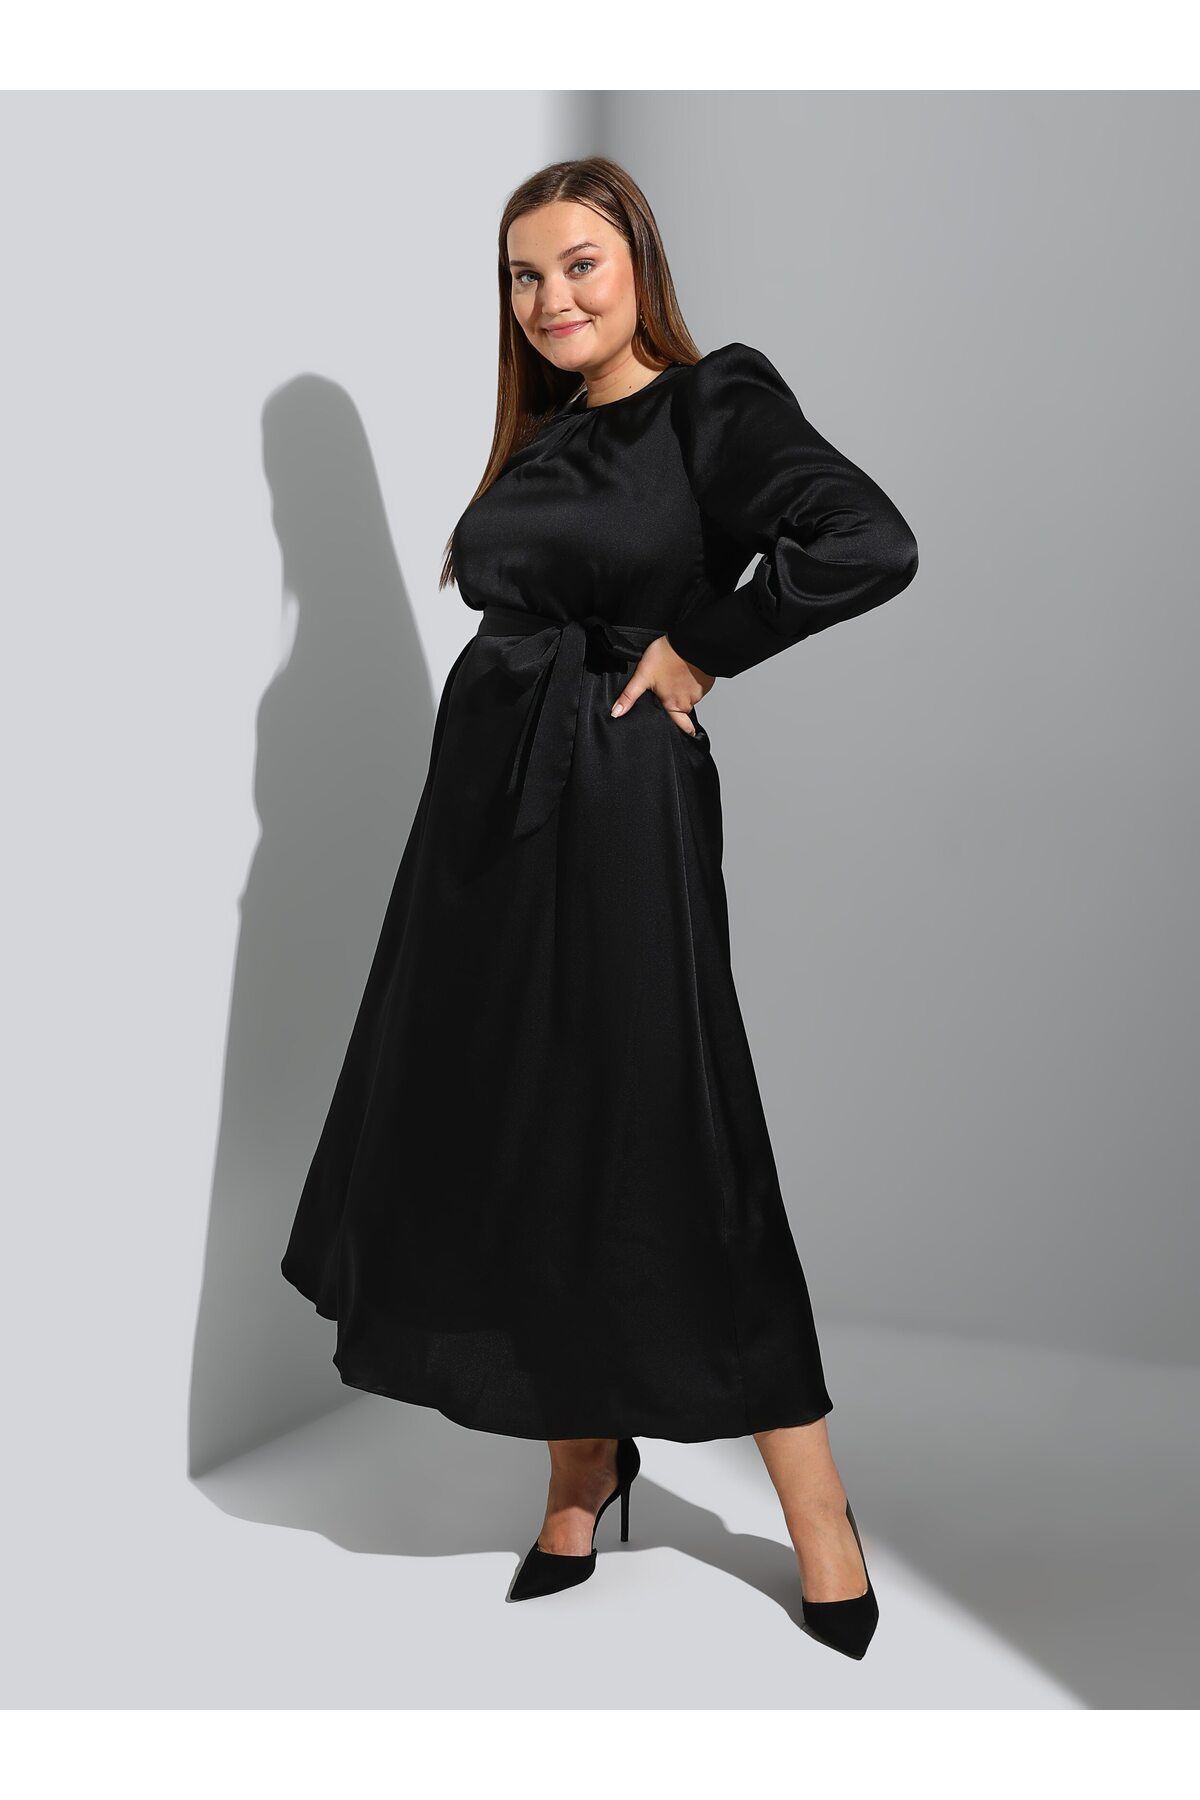 Alia Balon Kol Büyük Beden Saten Elbise - Siyah - Alia